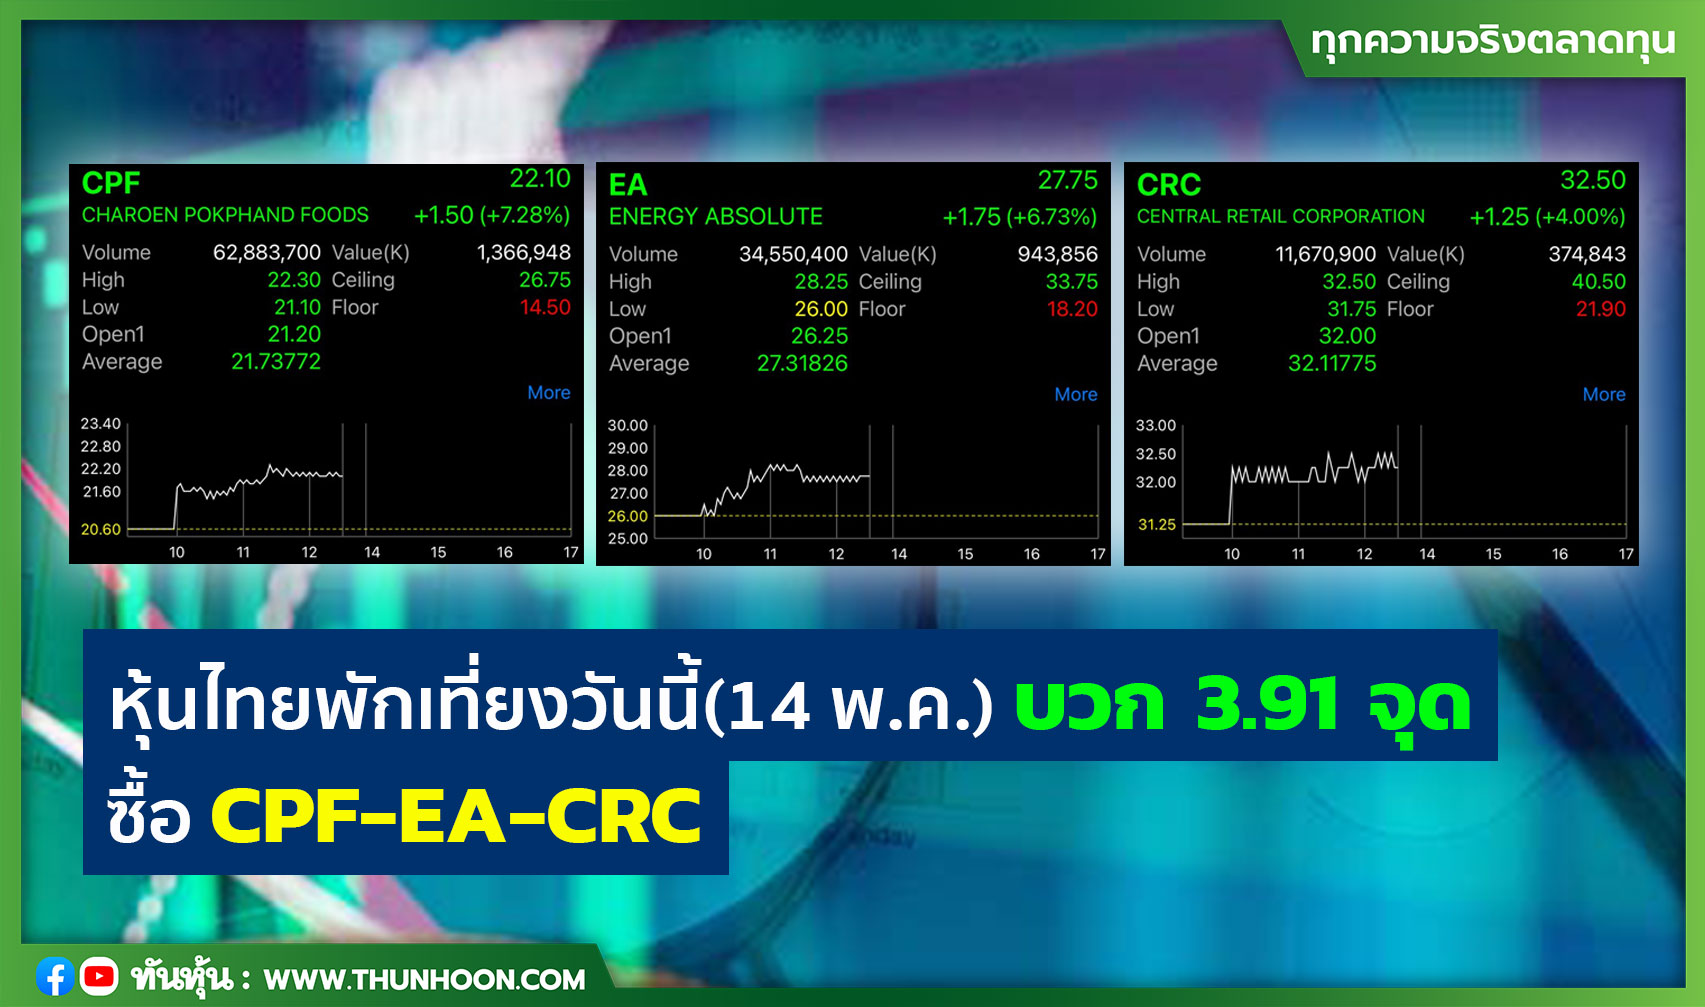 หุ้นไทยพักเที่ยงวันนี้(14 พ.ค.) บวก 3.91 จุด ซื้อ CPF-EA-CRC